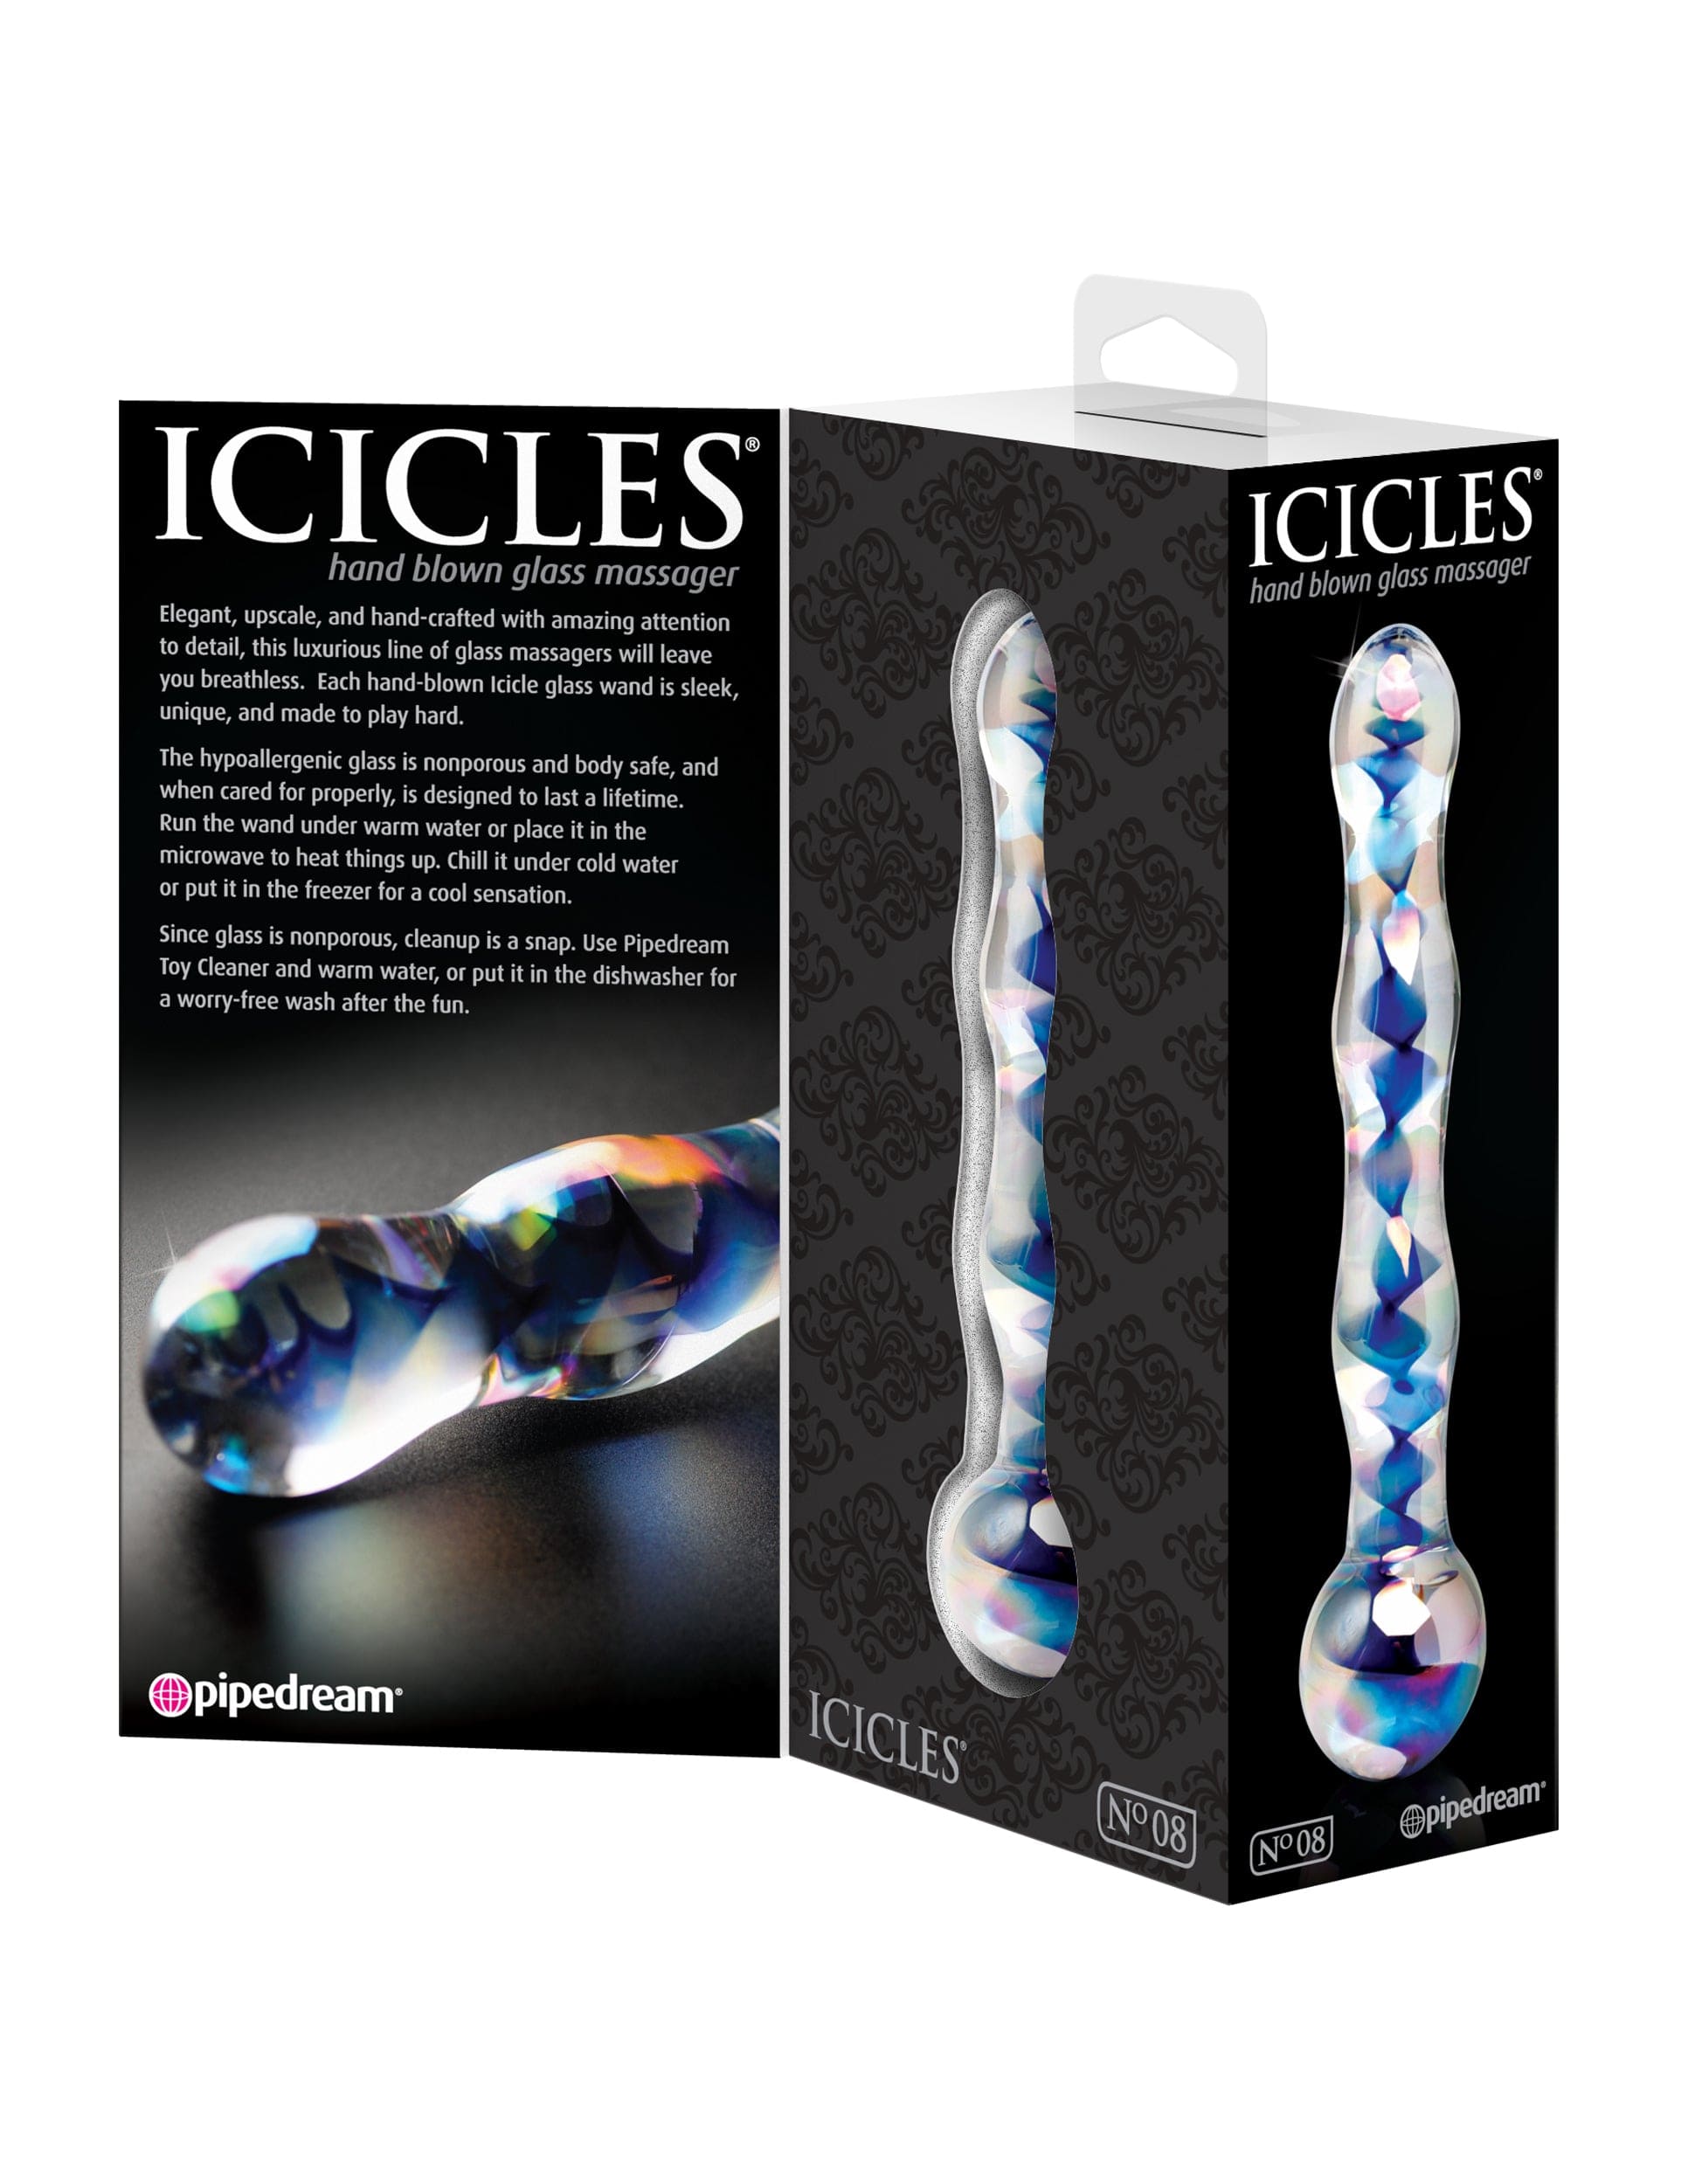 ICICLES NO 08